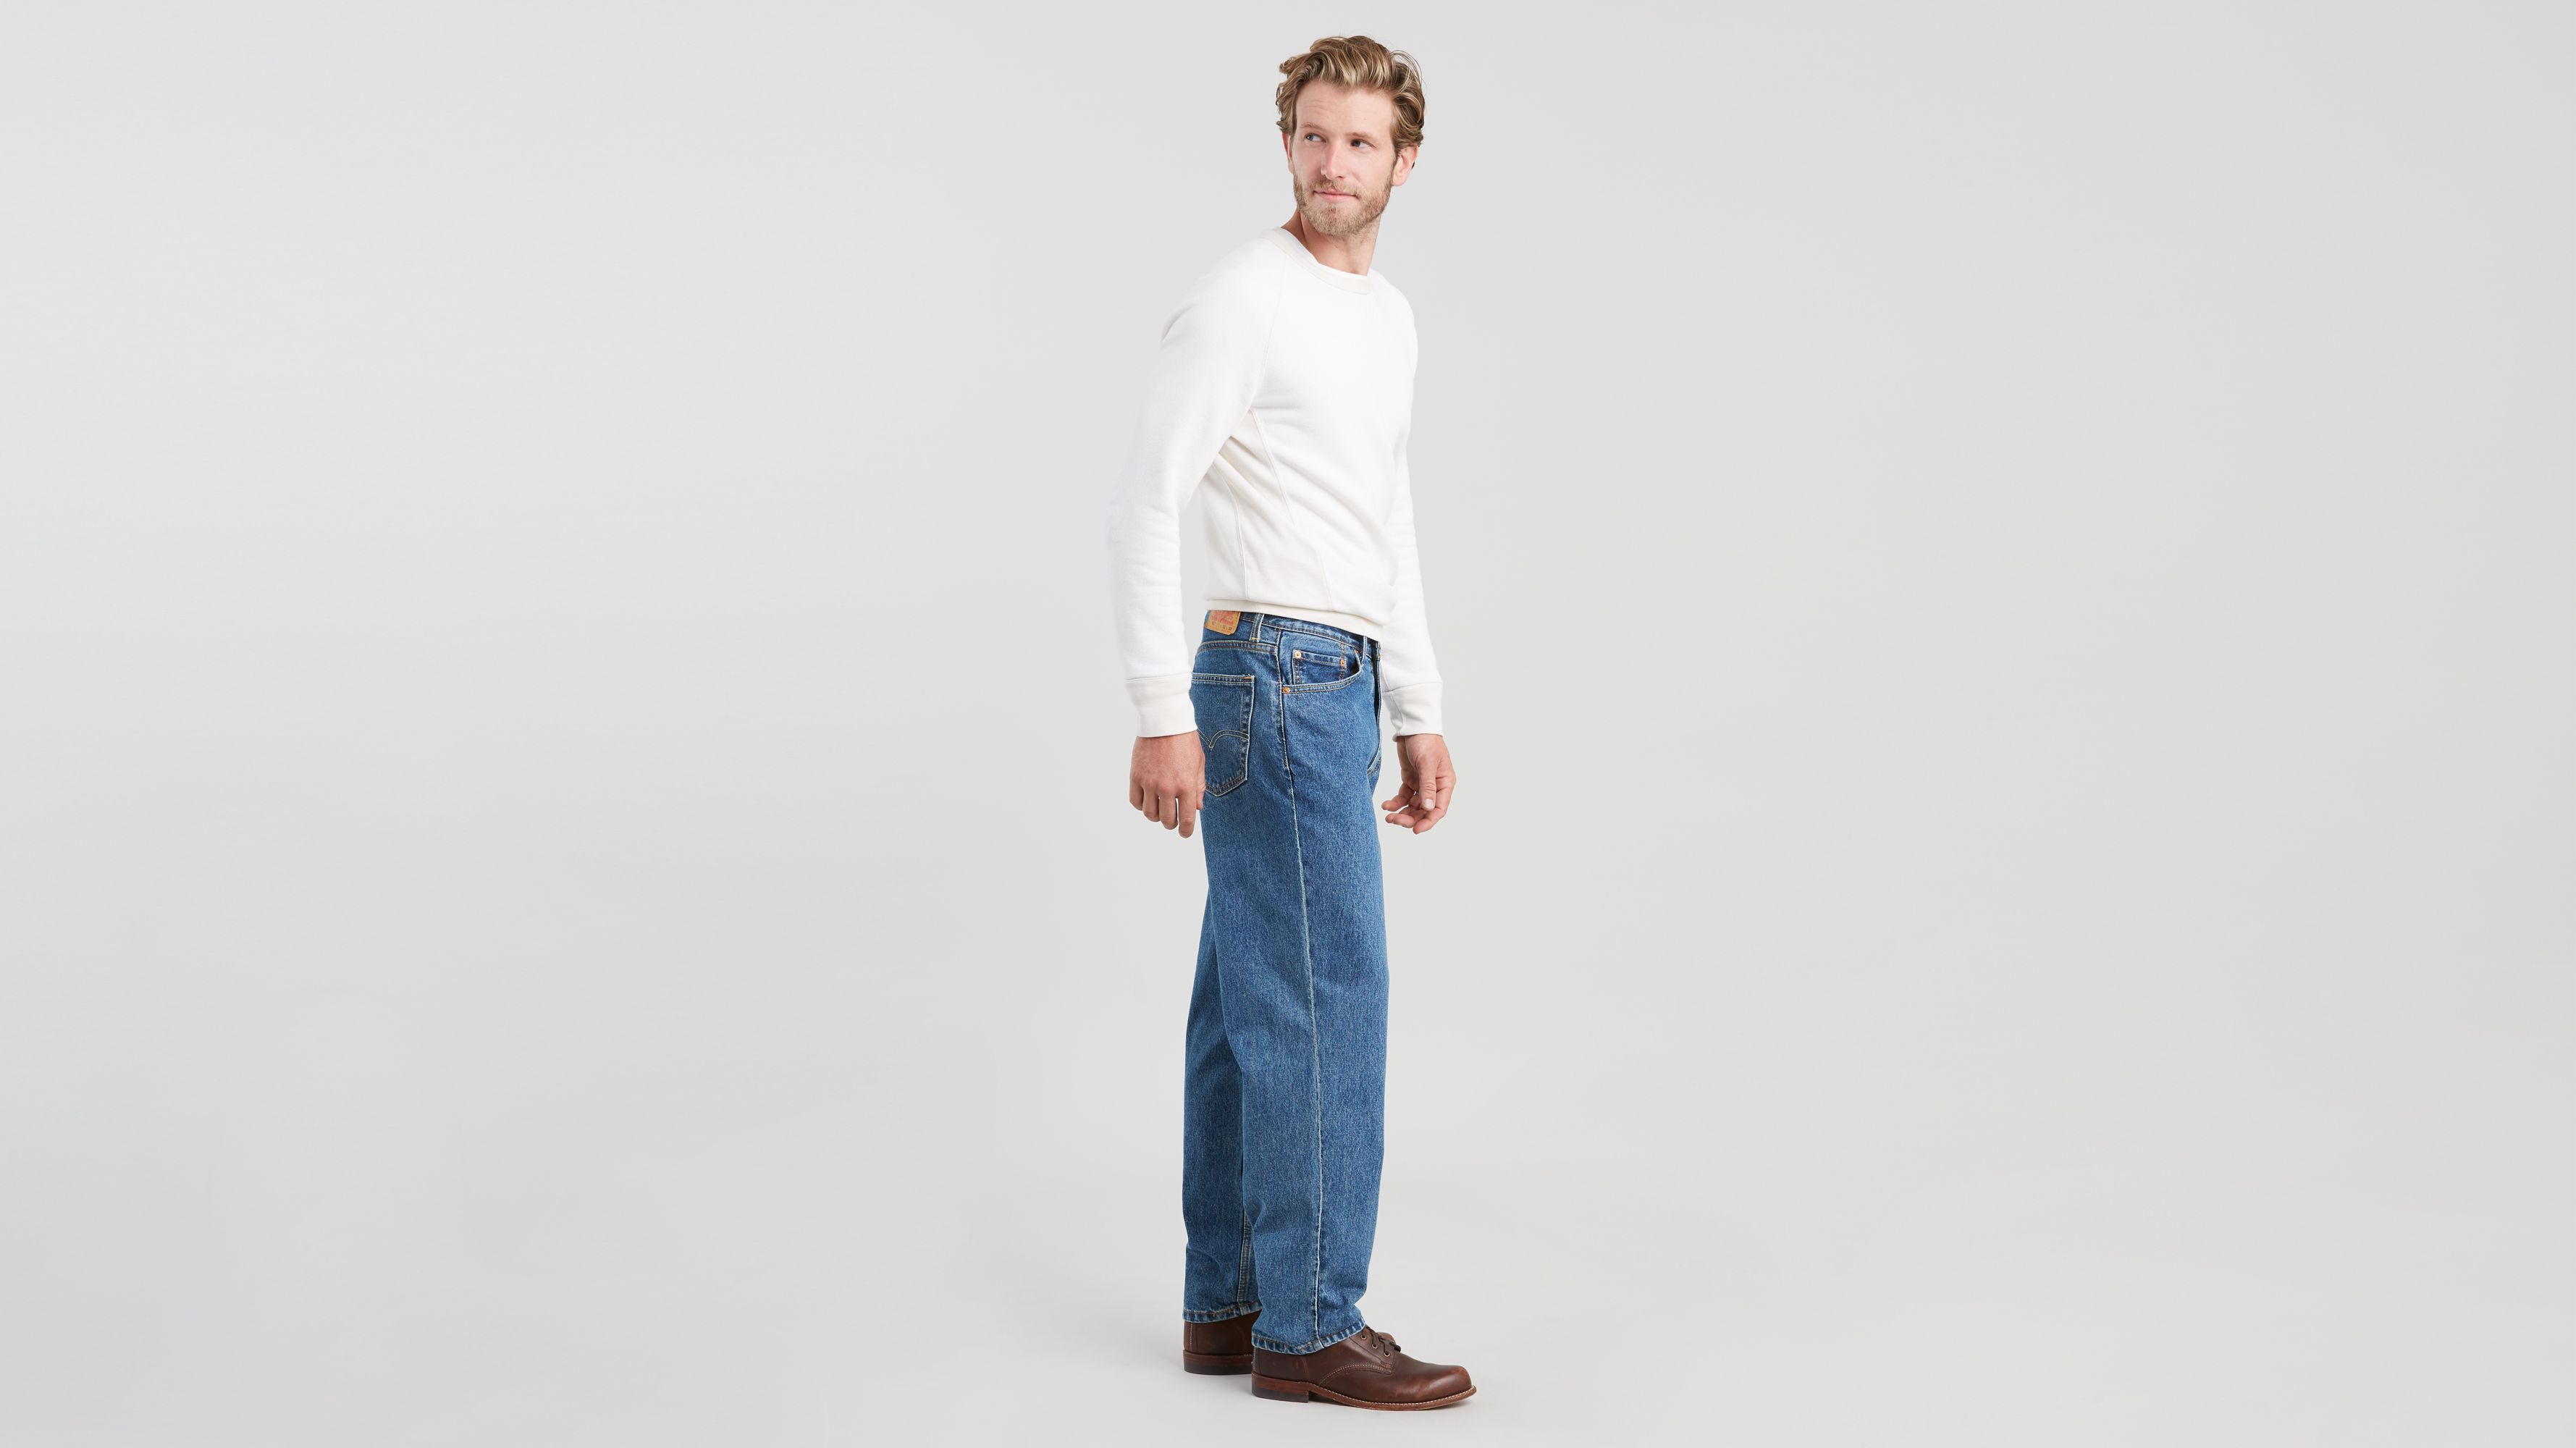 levis 560 jeans kohls